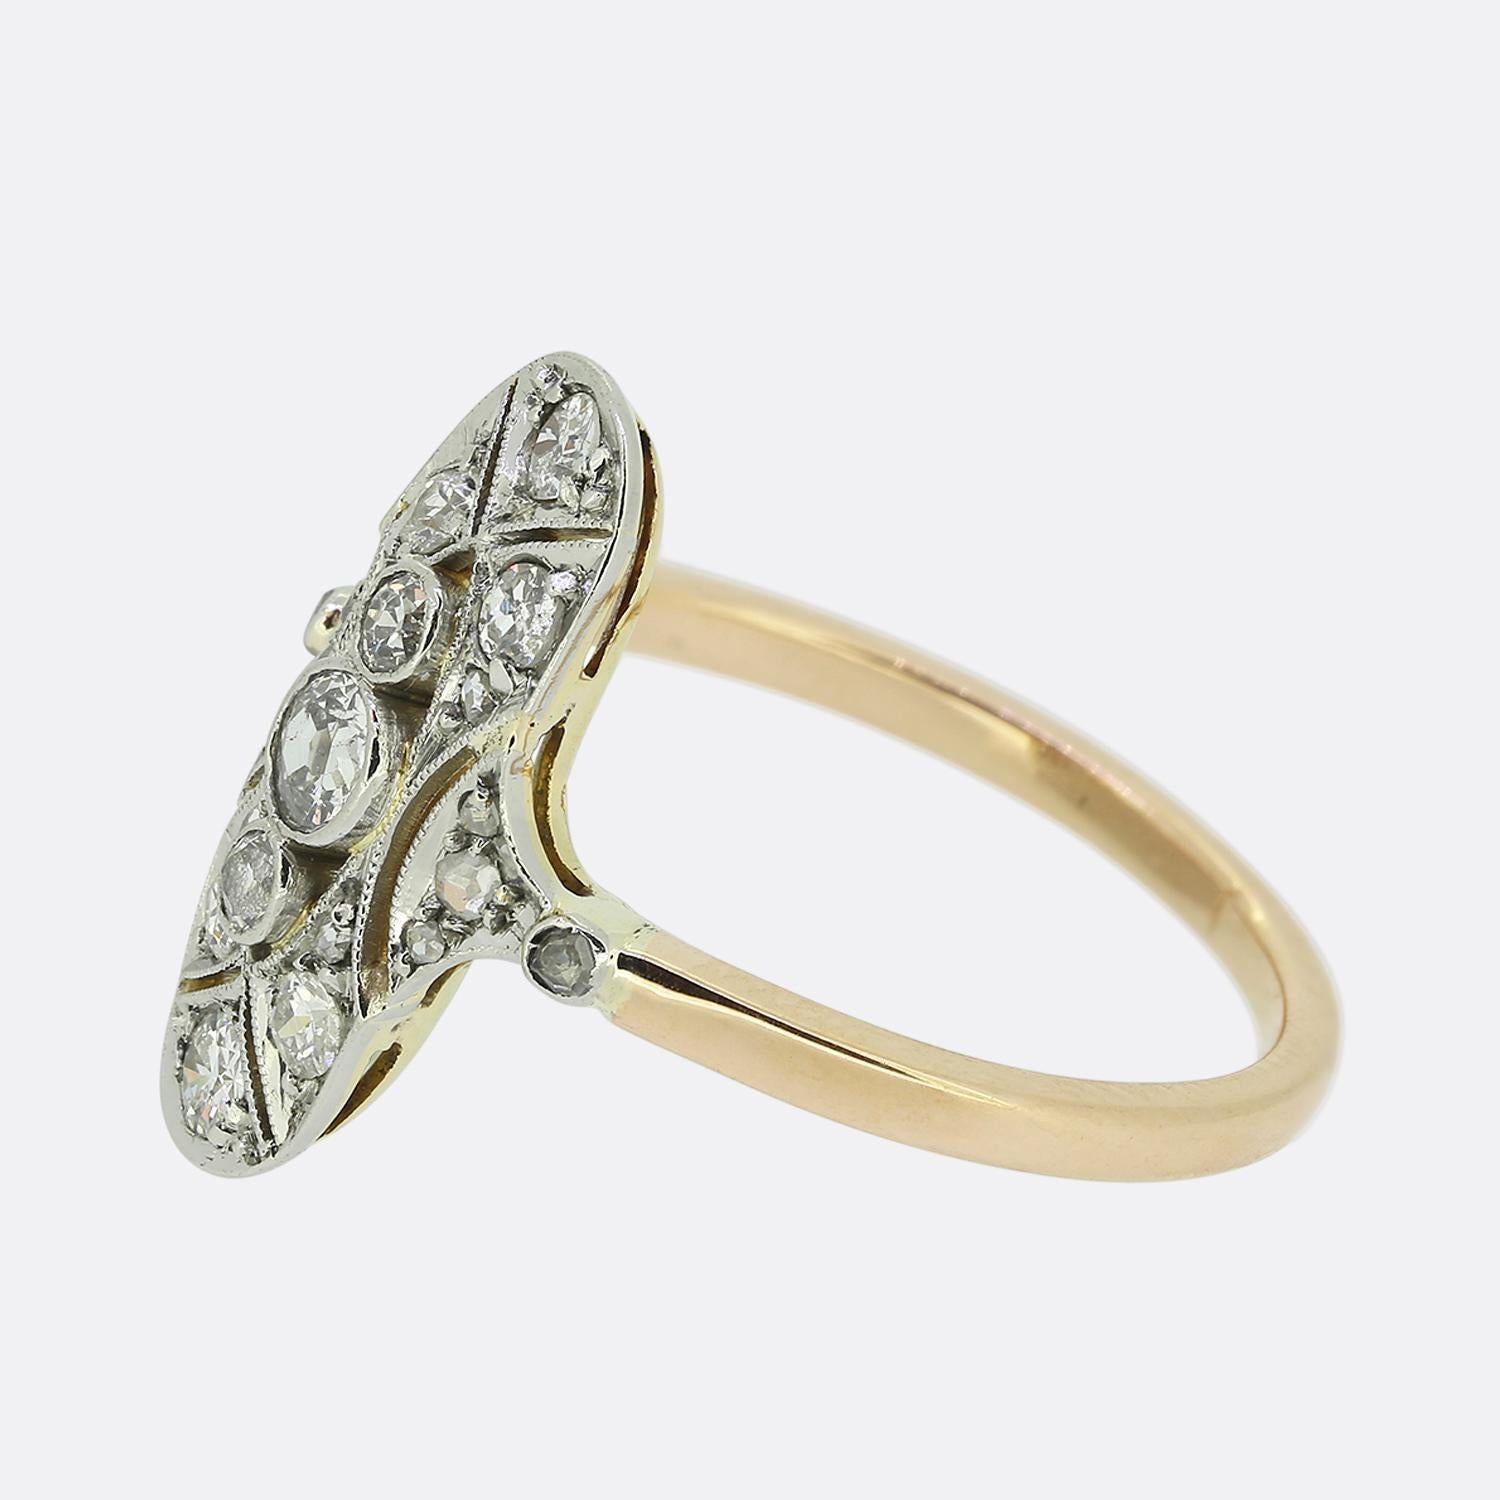 Hier haben wir einen reizvollen Diamant-Navette-Ring aus der Edwardianischen Zeit. In der Mitte der Vorderseite befinden sich drei runde, facettierte Diamanten im alten europäischen Schliff in einer vertikalen Formation. Dieses Trio sitzt leicht